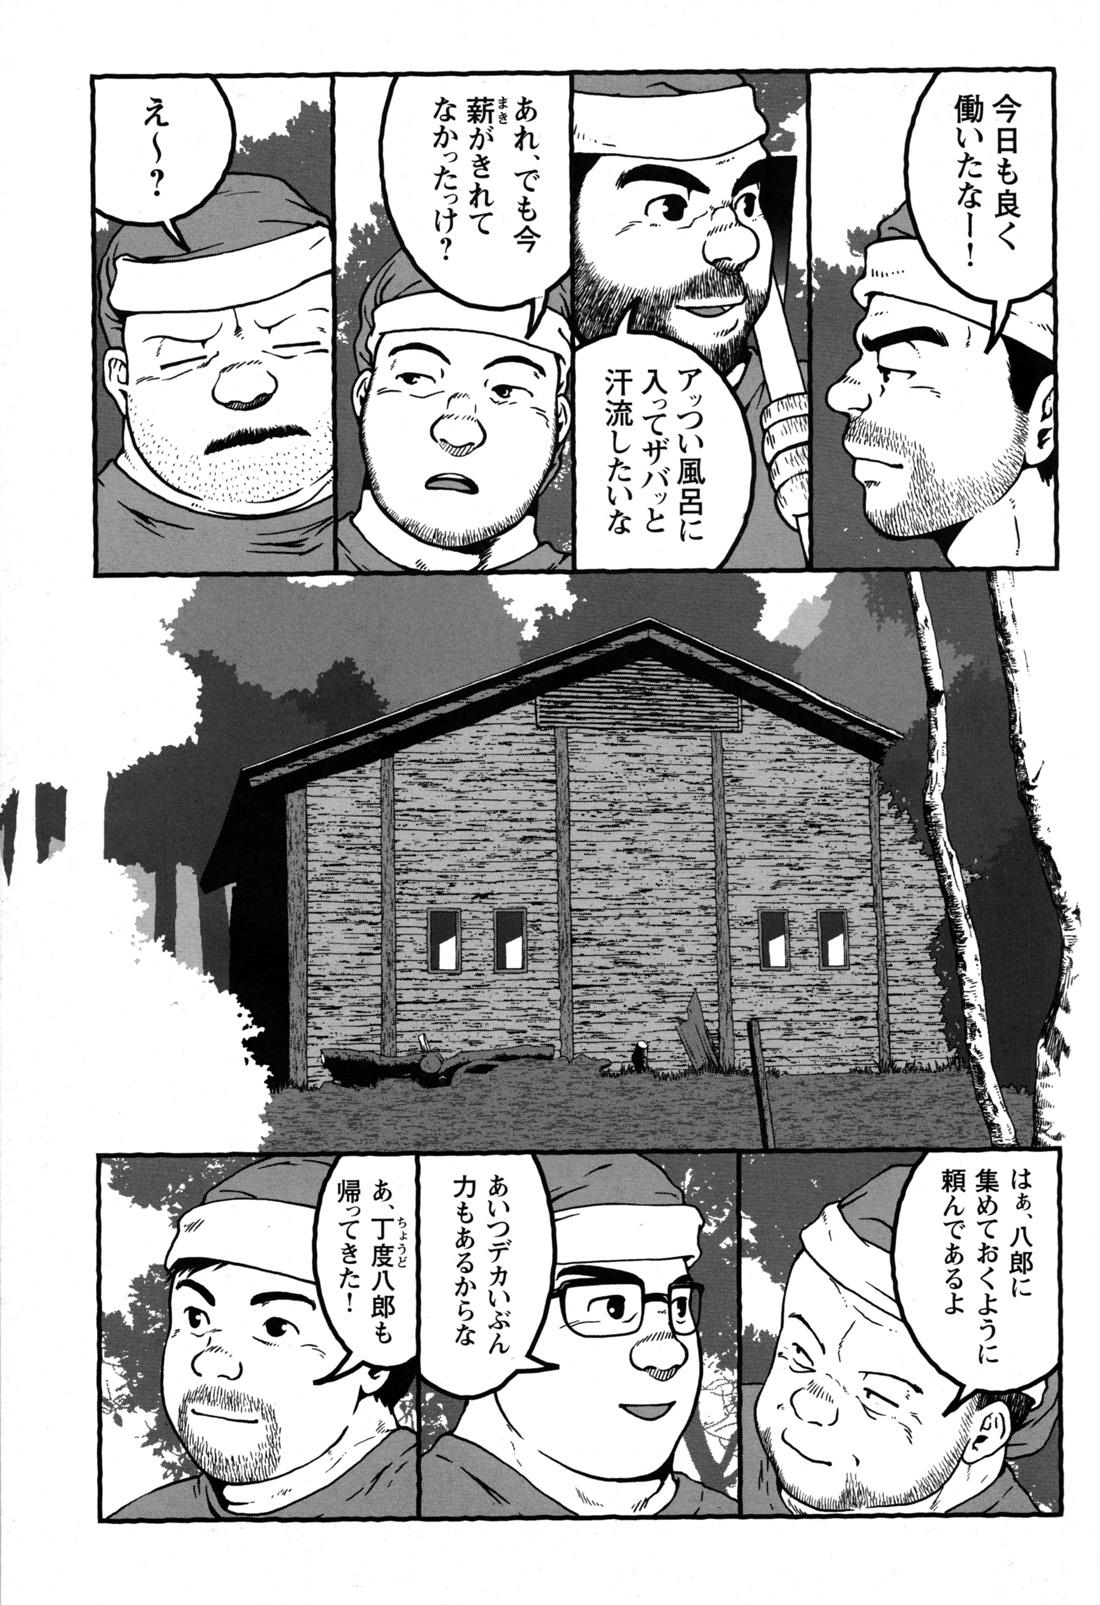 Comic G-men Gaho No.09 Gacchibi Zeme 130